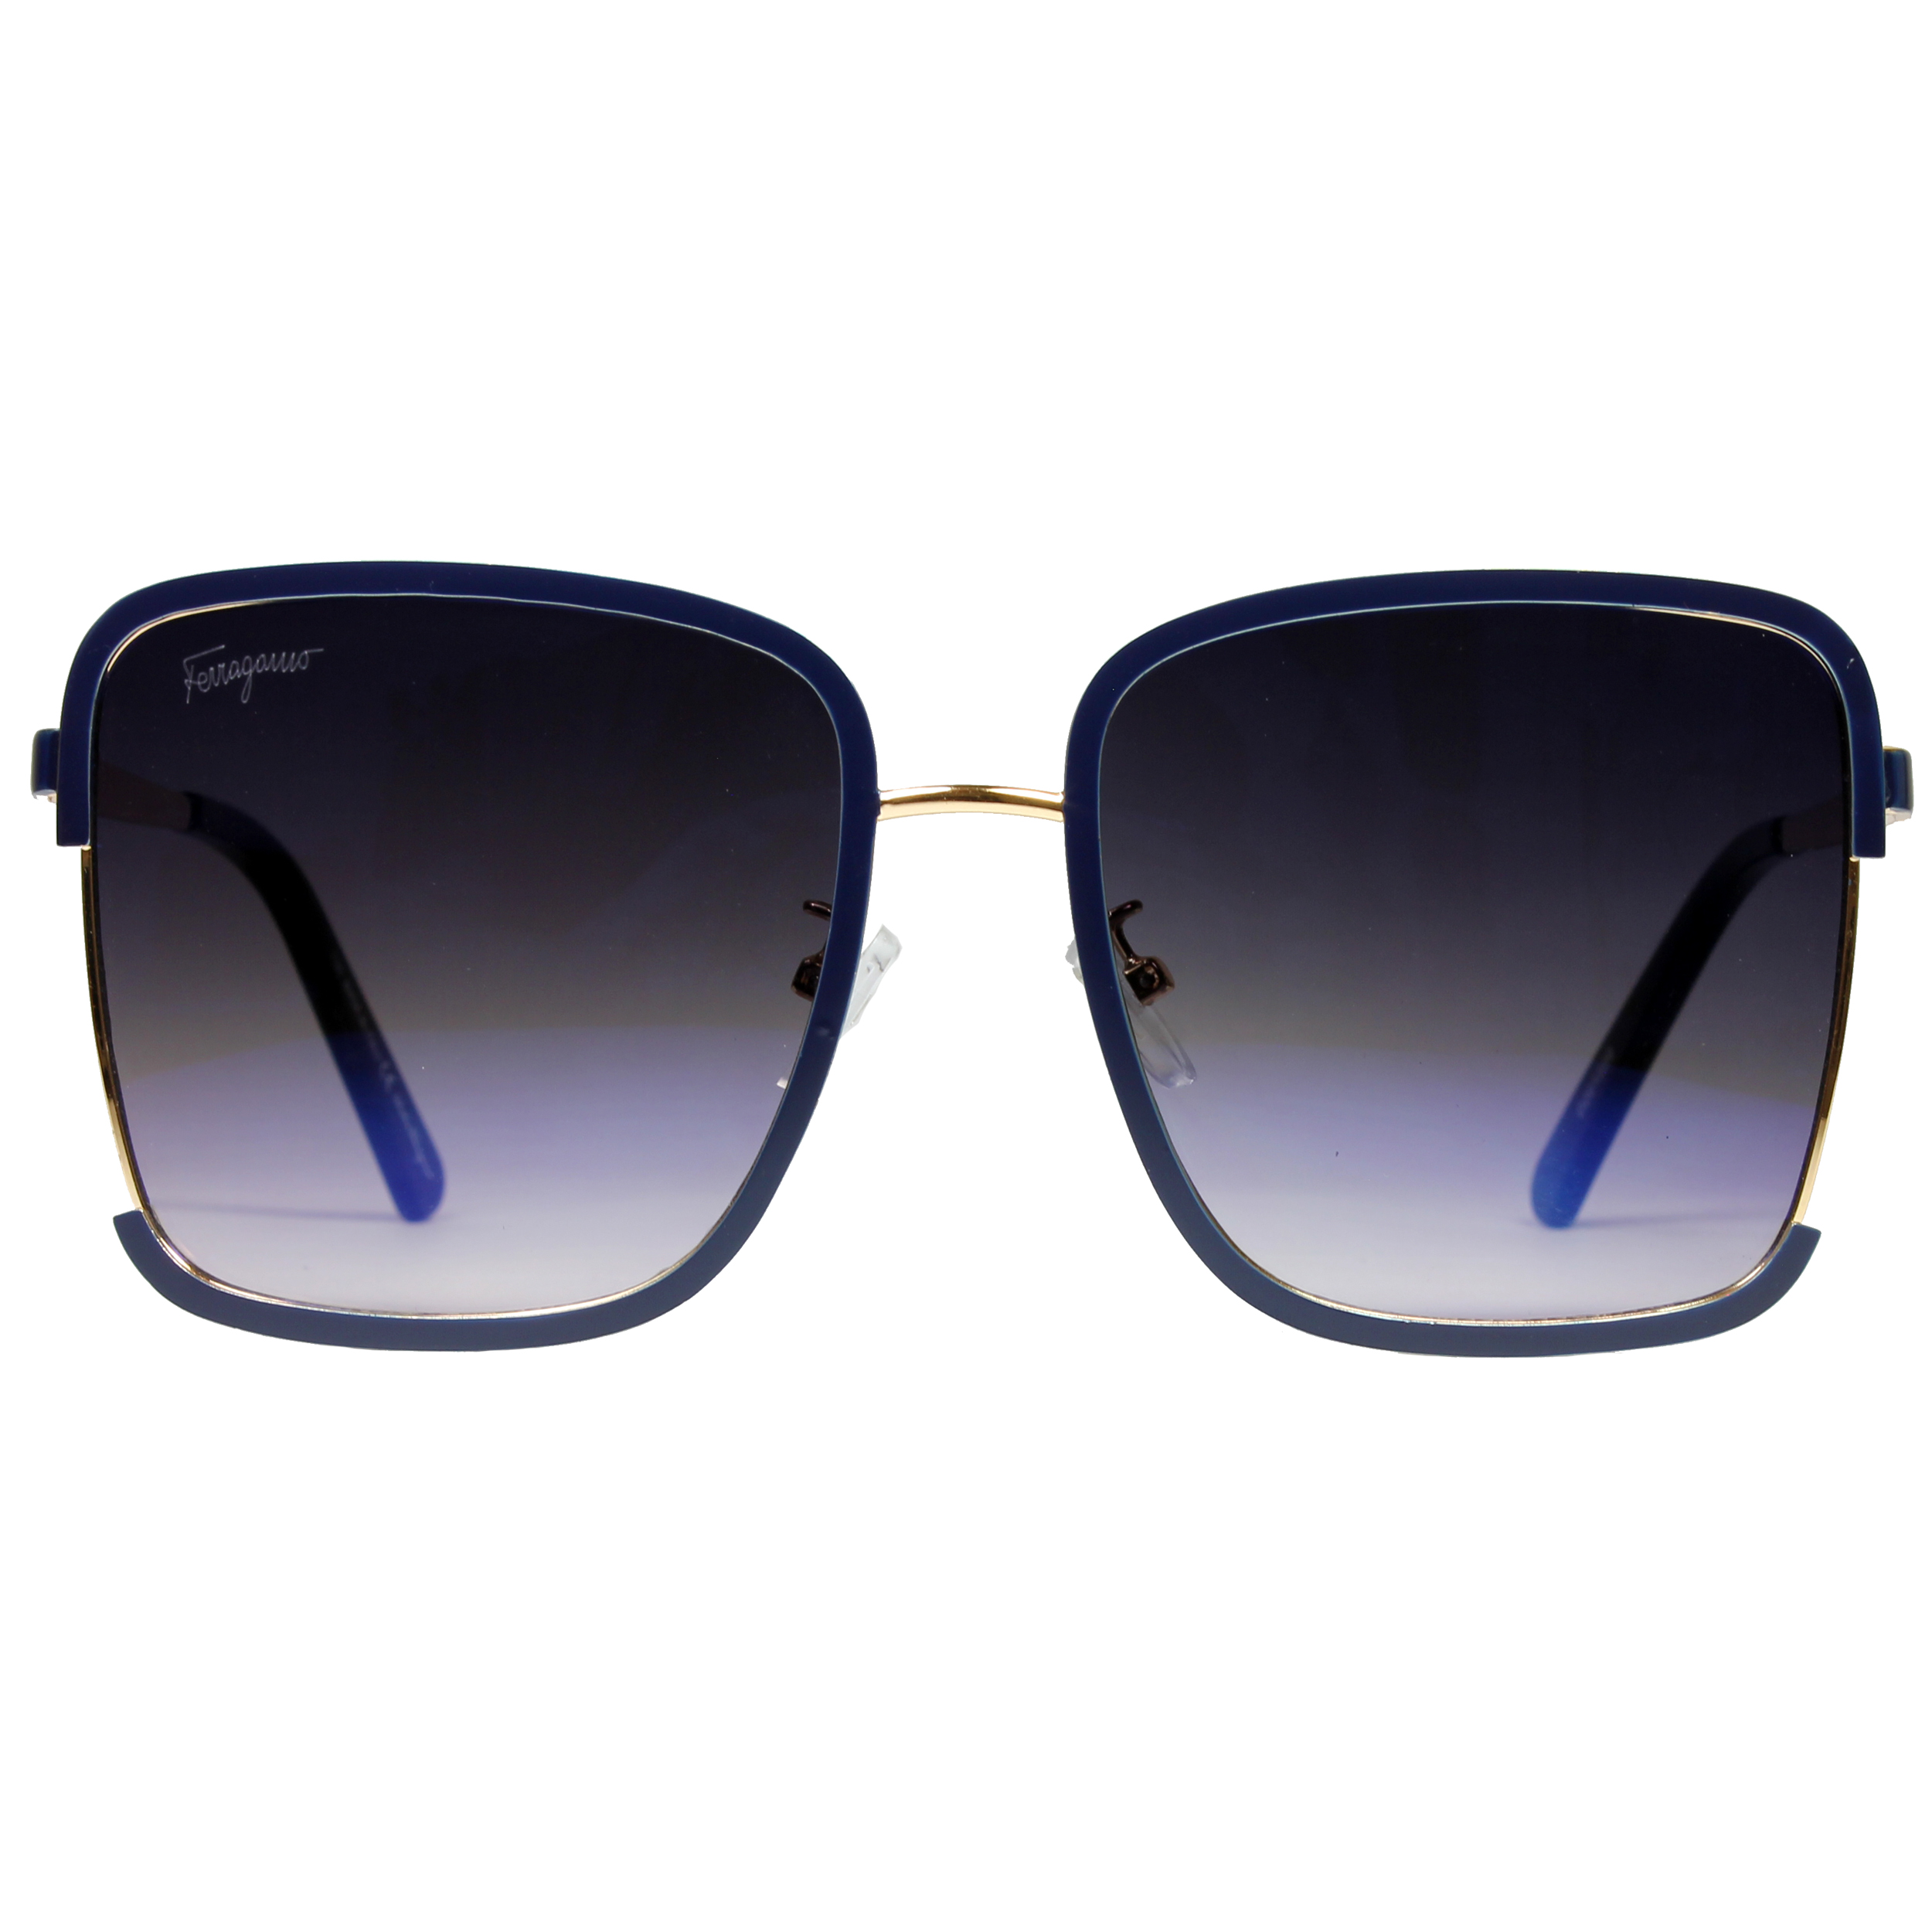 عینک آفتابی سالواتوره فراگامو مدل 201220 -  - 1